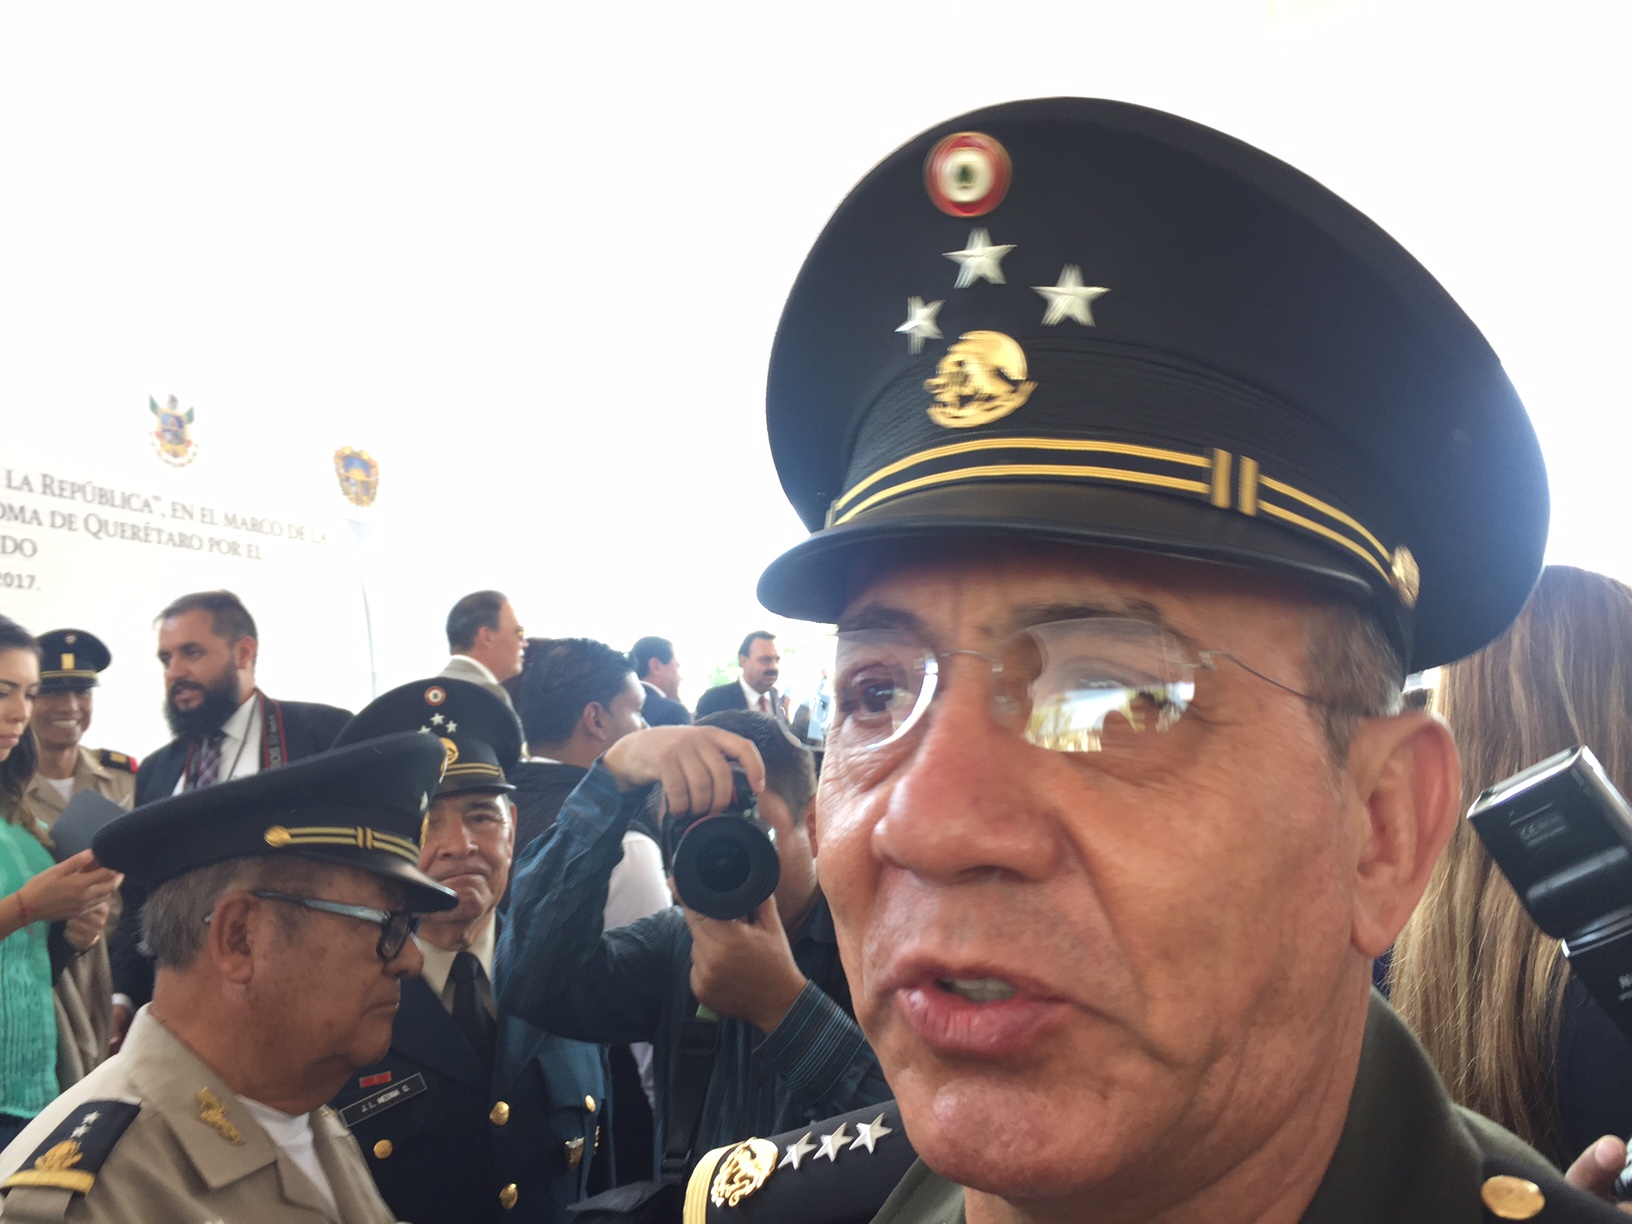  Halagador, apoyo a las Fuerzas Armadas en Ley de Seguridad Interior: subsecretario de Defensa